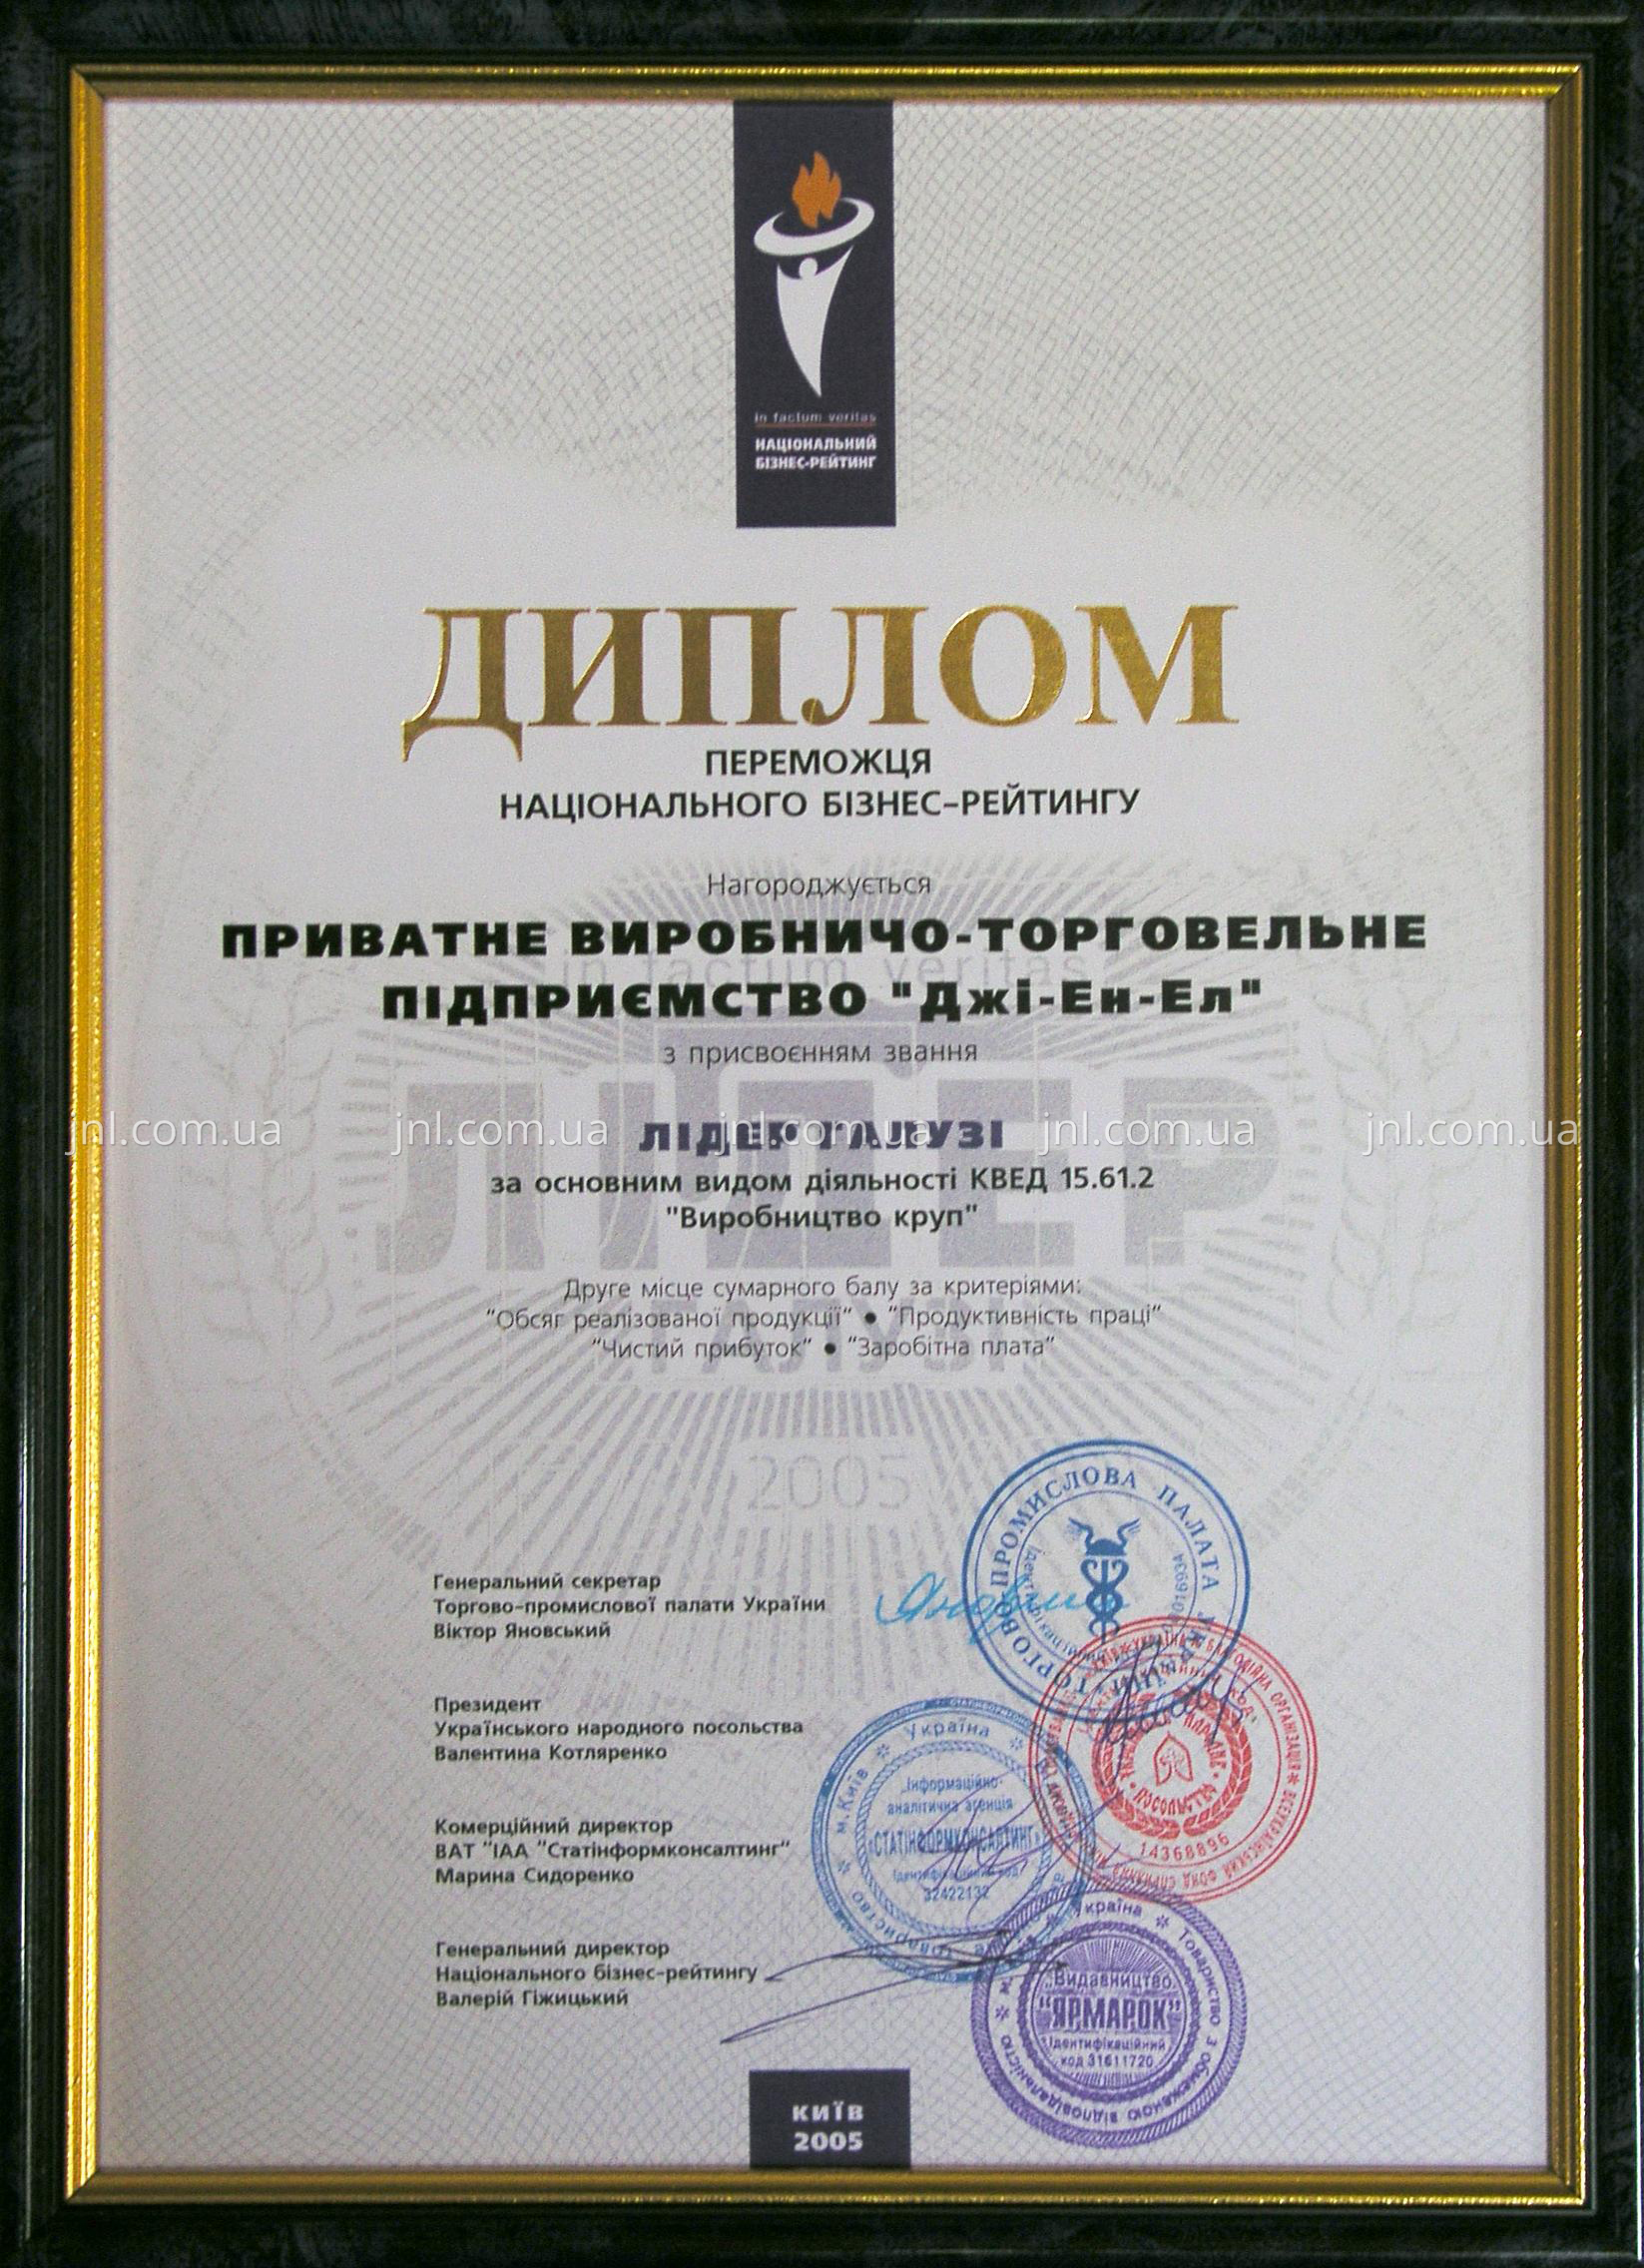 Диплом победителя национального бизнес-рейтинга «Лидер отрасли-2005»